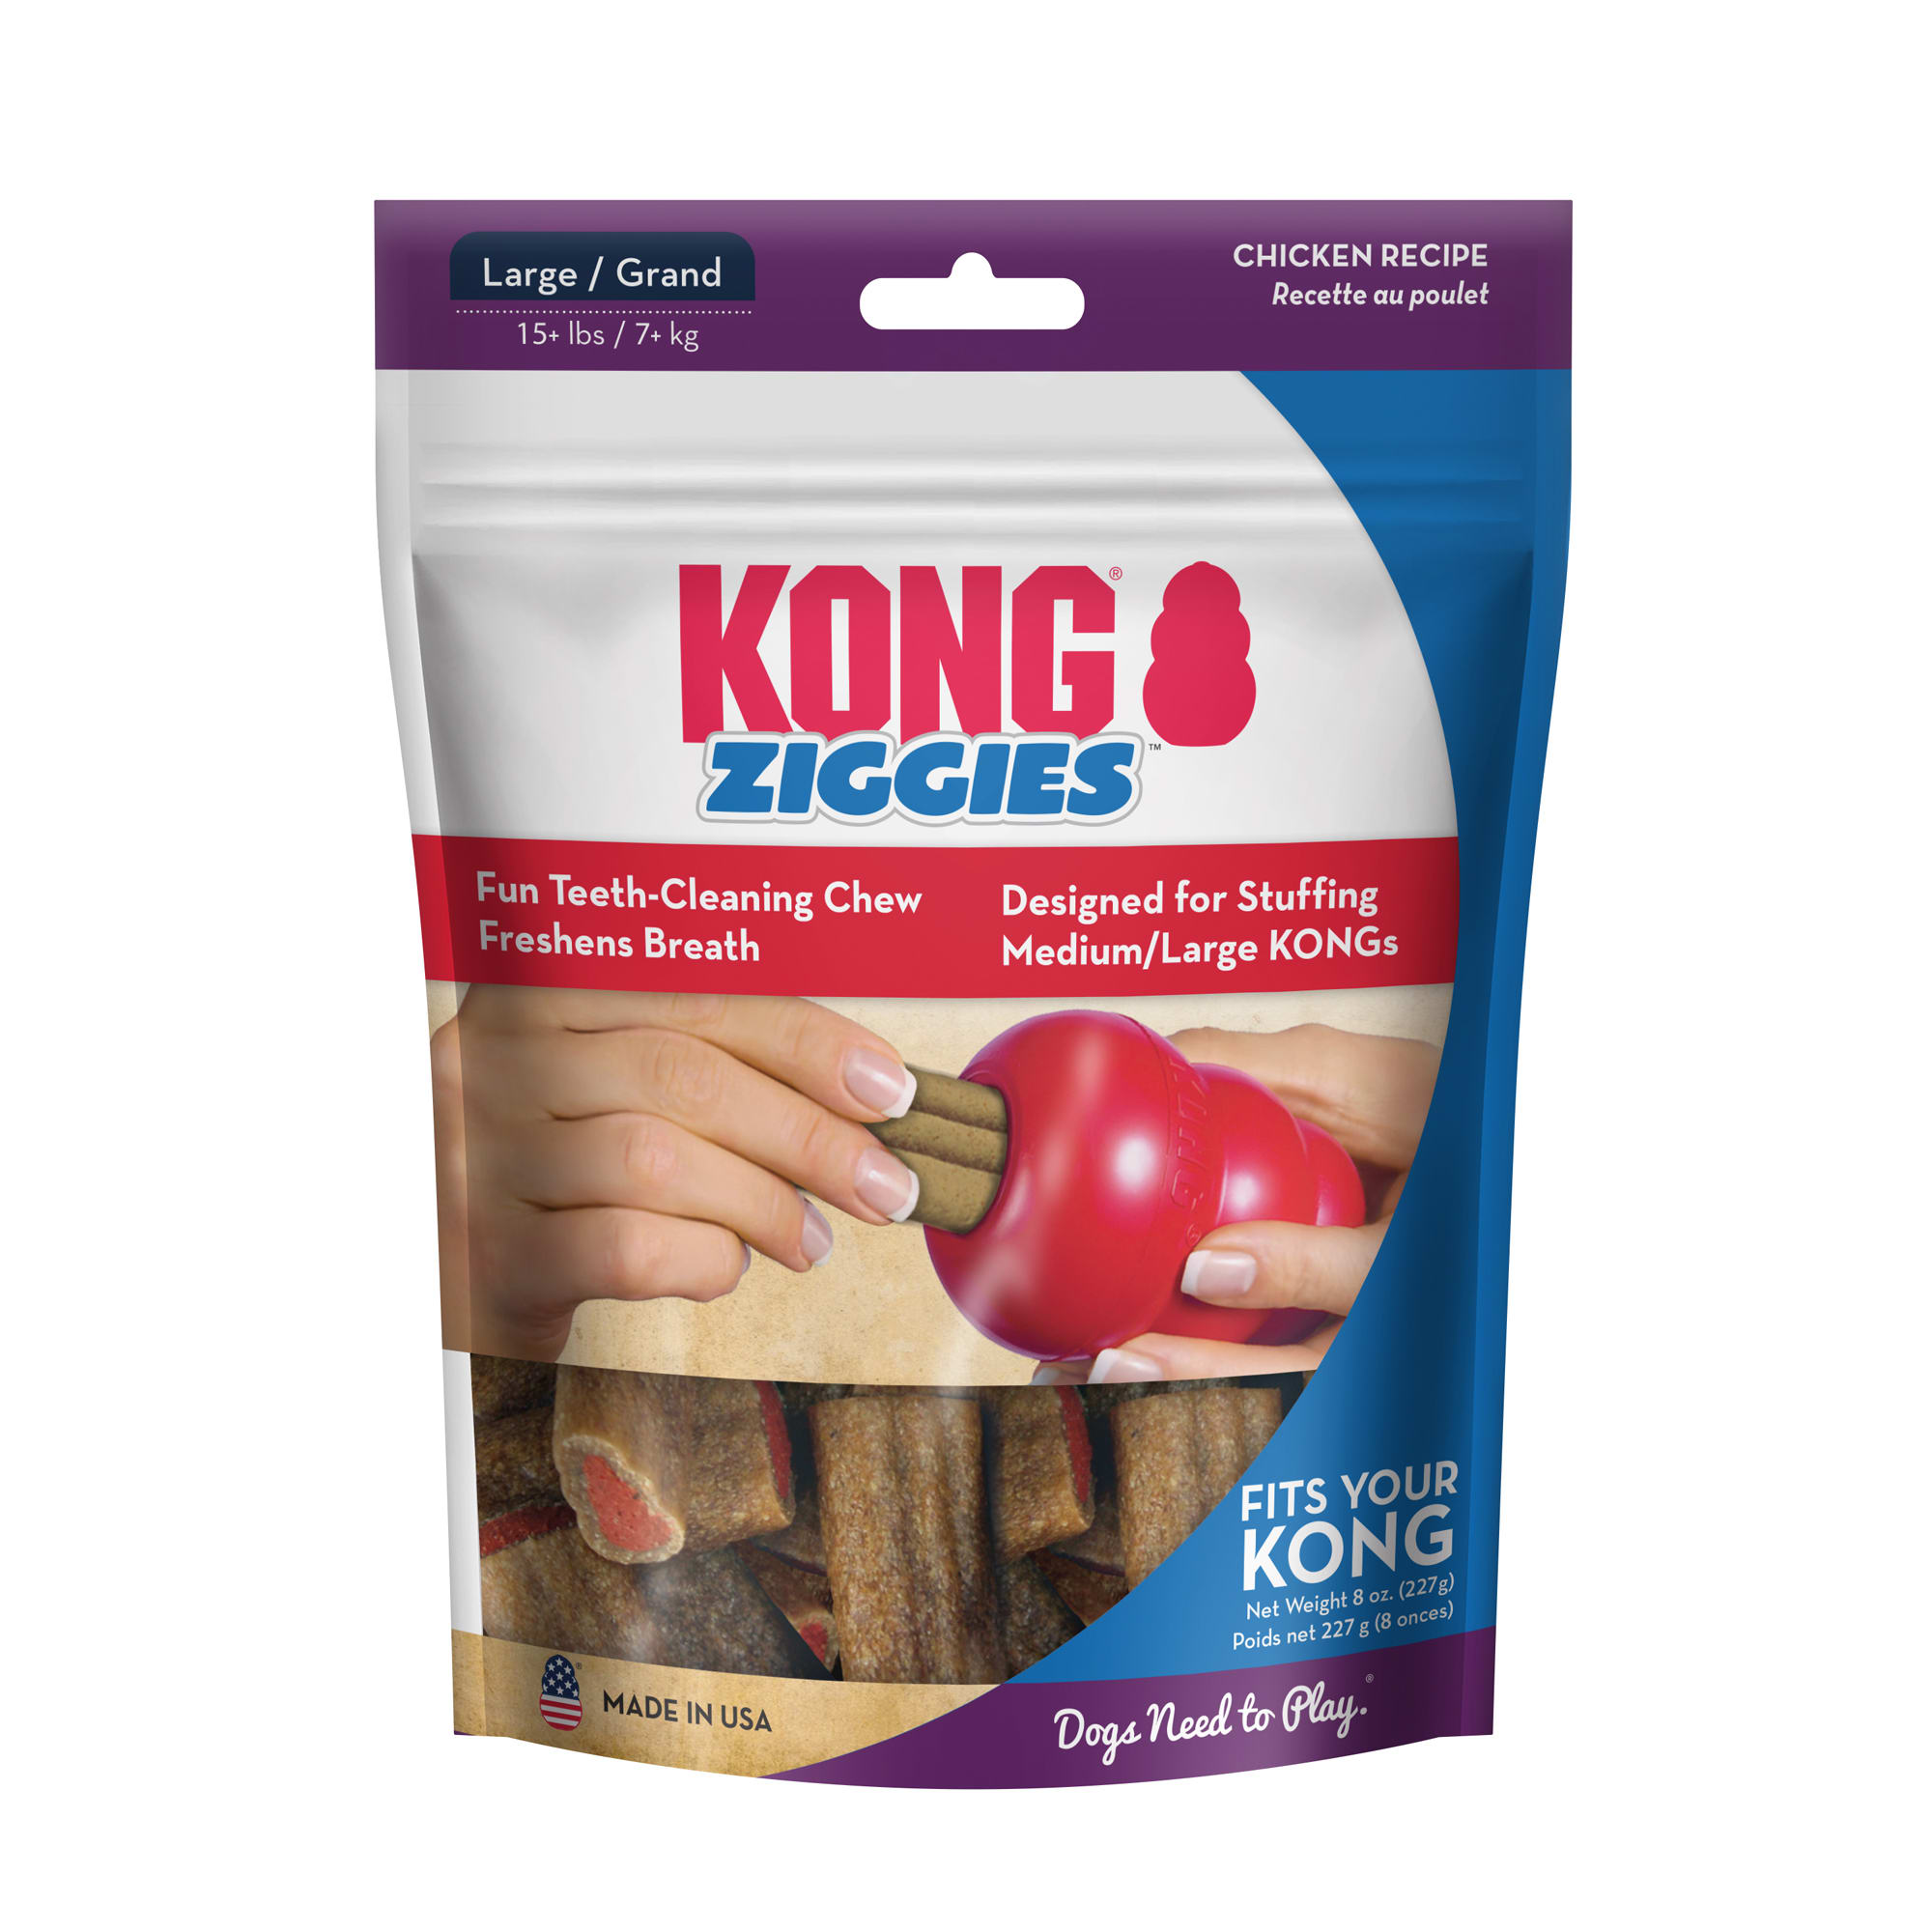 Photos - Dog Food KONG Ziggies Adult Dog Treats, 8 oz., Large XA11 